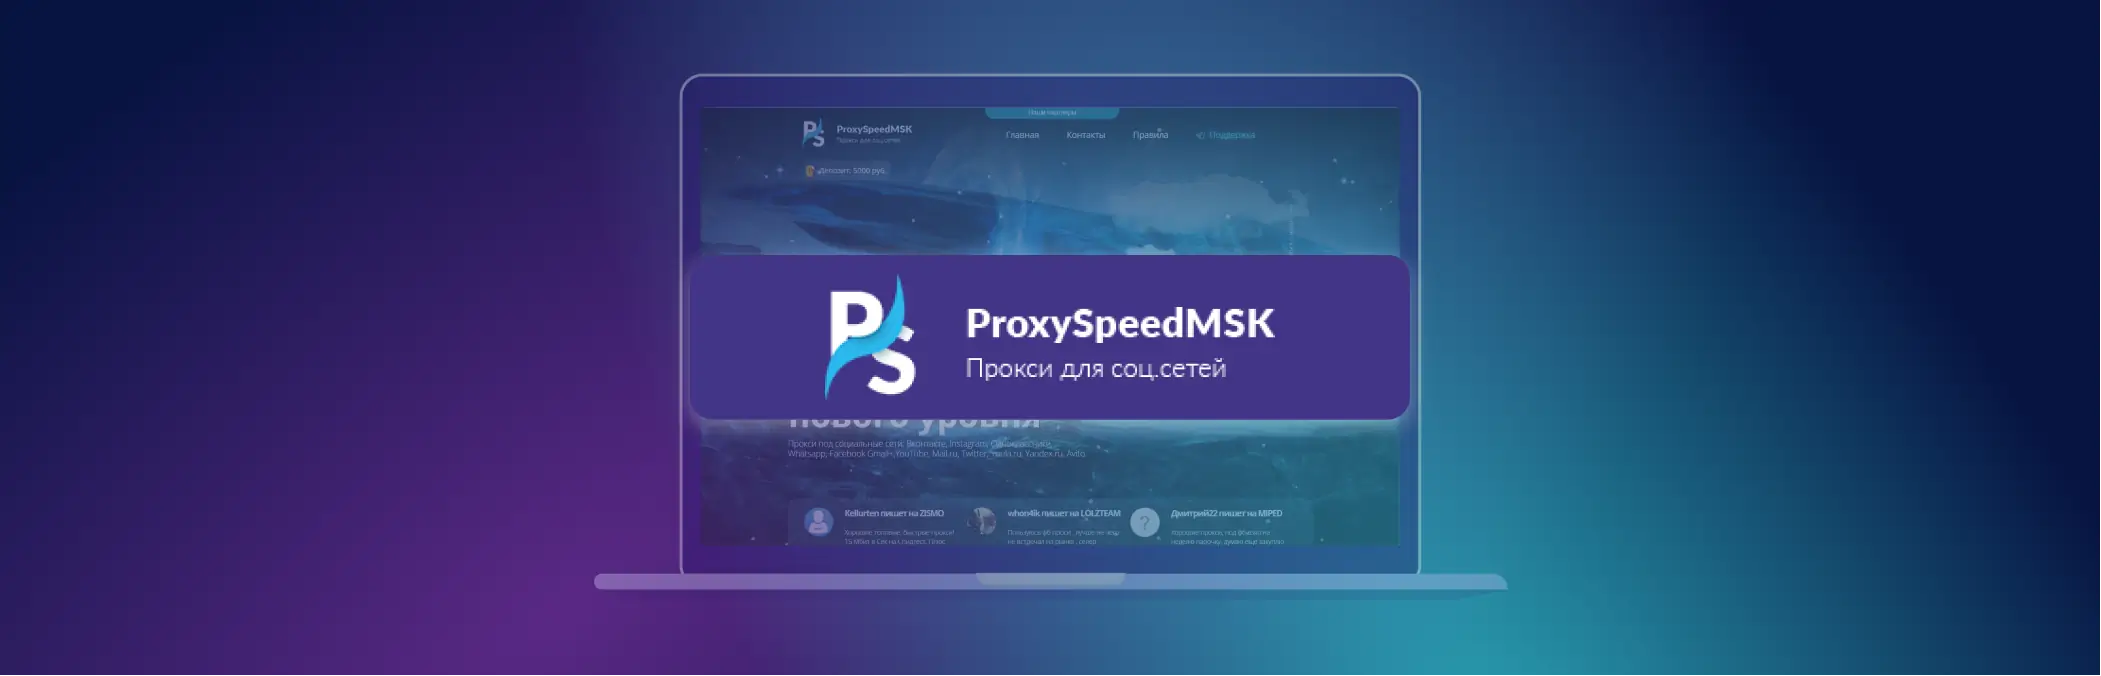 Proxy di động: ưu điểm, loại và nơi mua - ProxySpeedMSK